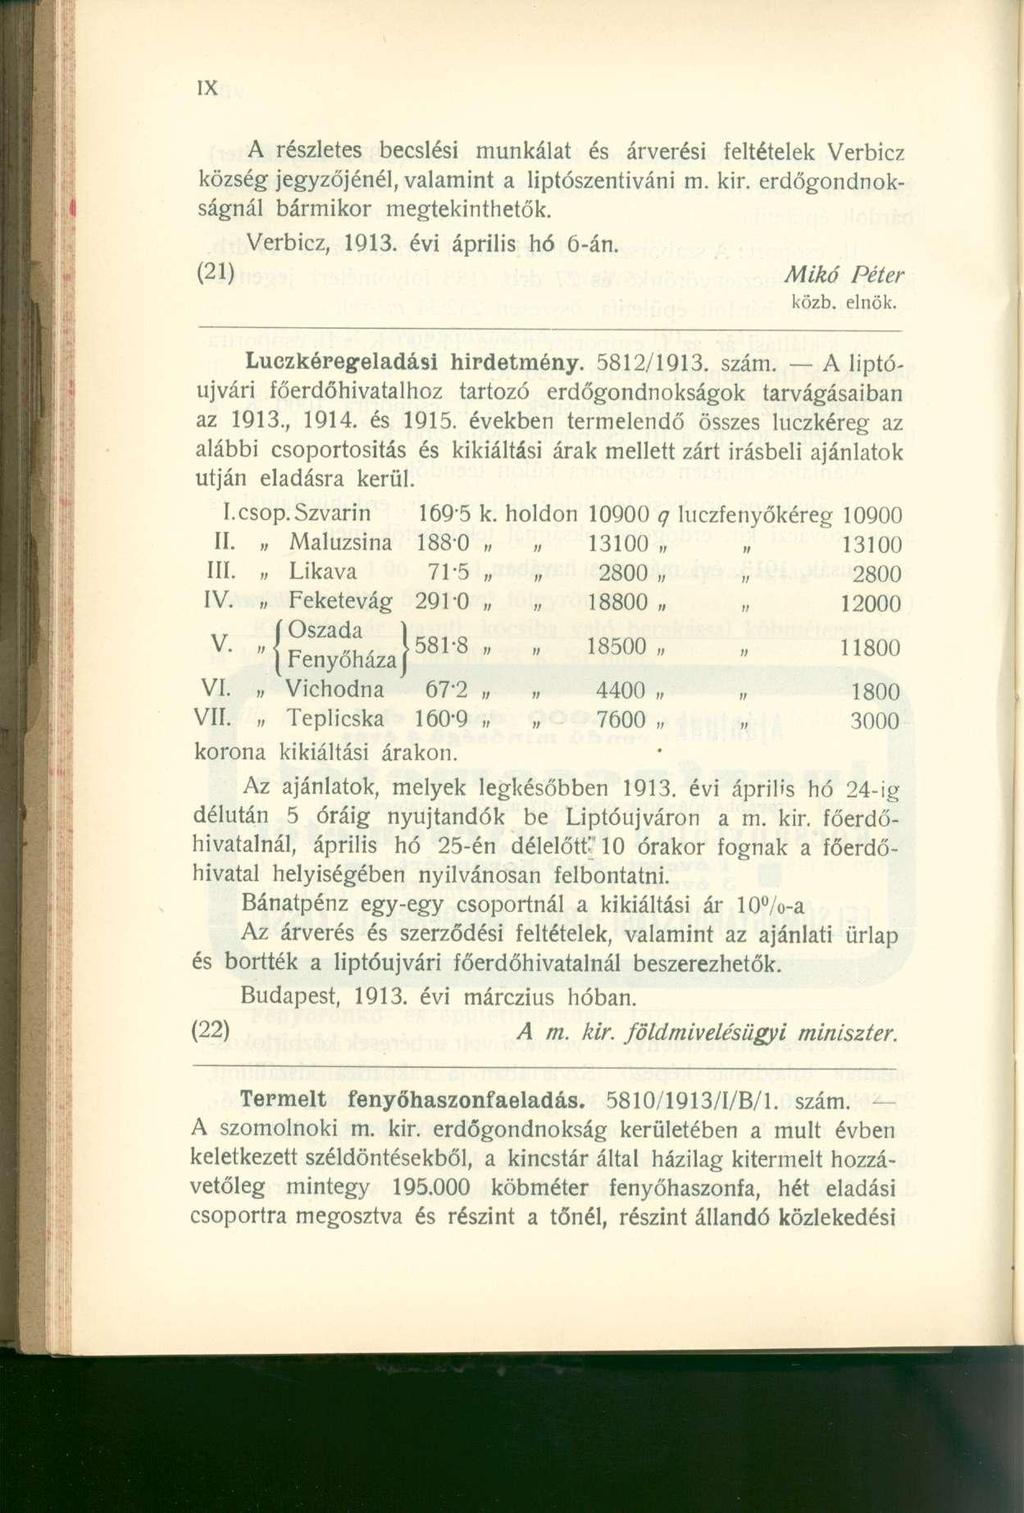 A részlete s becslés i munkála t é s árverés i feltétele k Verbic z község jegyzőjénél, valamint a liptószentiváni m. kir. erdőgondnokságnál bármiko r megtekinthetők. Verbicz, 1913.